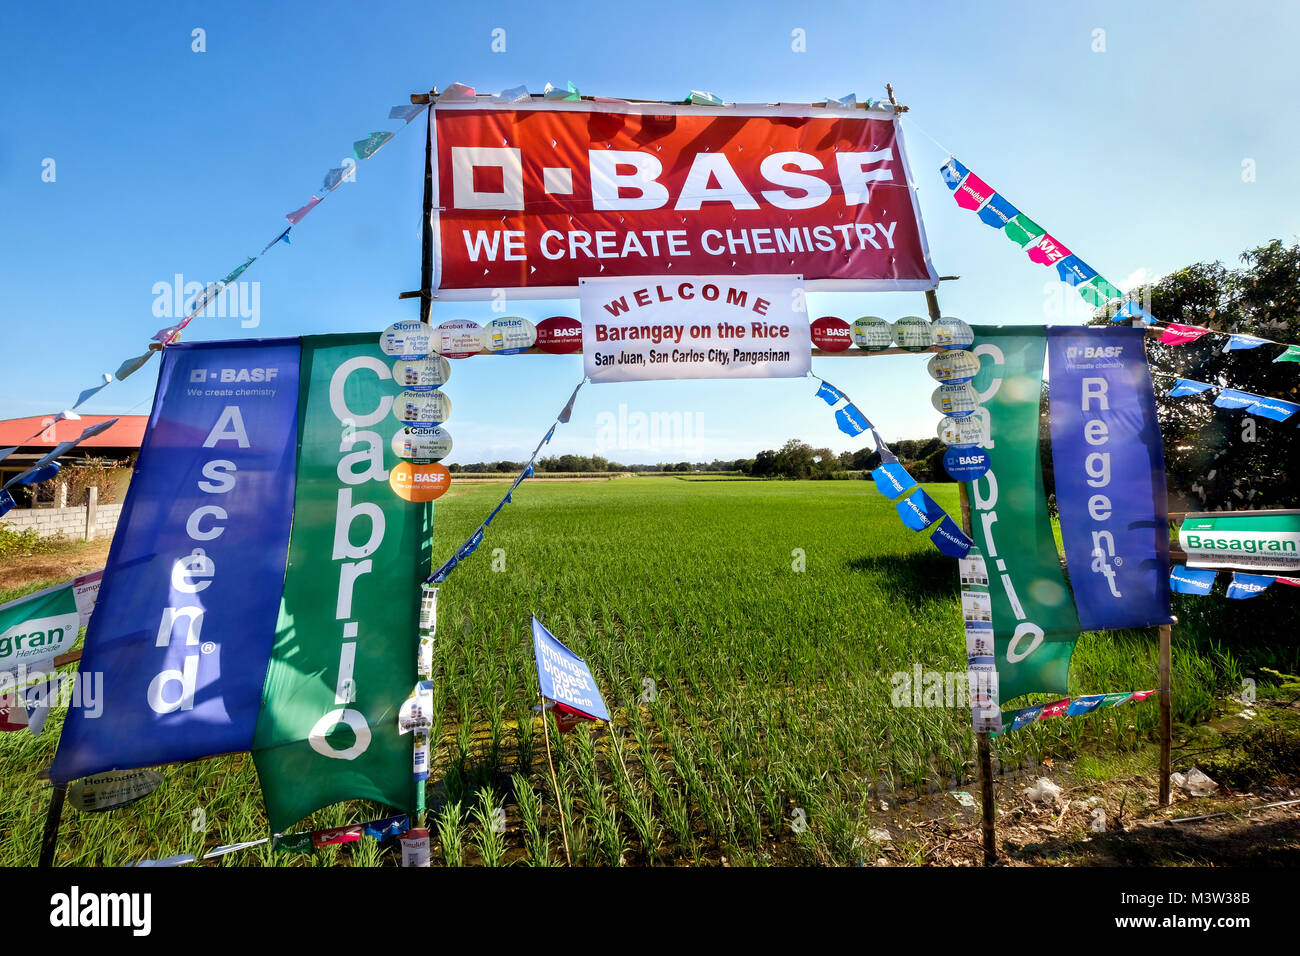 Flaggen der Chemiekonzern BASF in einem Reisfeld in den Philippinen (Pangasinan Provinz) werben für die chemischen Produkte, die der Gruppe, die es verwendet werden. - - - - Fahnen des Chemiekonzerns BASF in einem Reisfeld in den Philippinen (Pangasinan-Provinz) machen Reklame für die chemischen Produkte des Konzern, sterben dort eingesetzt werden. Stockfoto